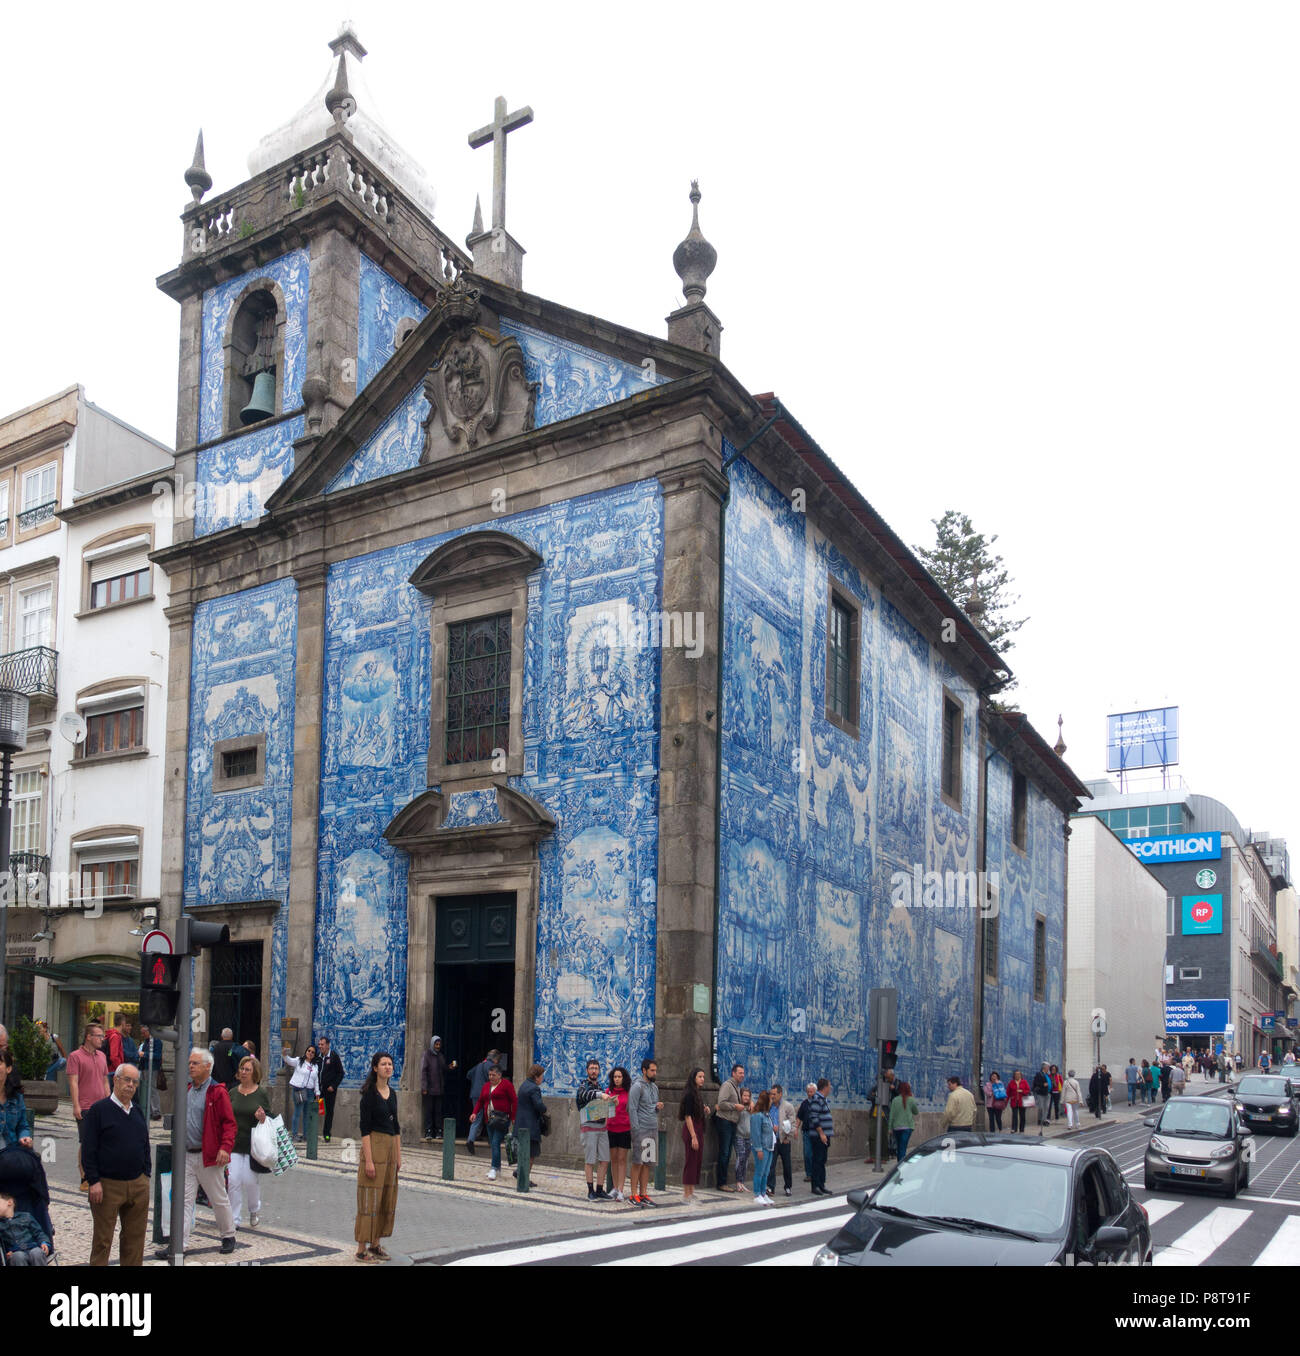 Kapelle der Seelen (Capela das Almas) in der Rua de Santa Catarina, einer der wichtigsten Einkaufsstraßen von Oporto, Portugal Stockfoto